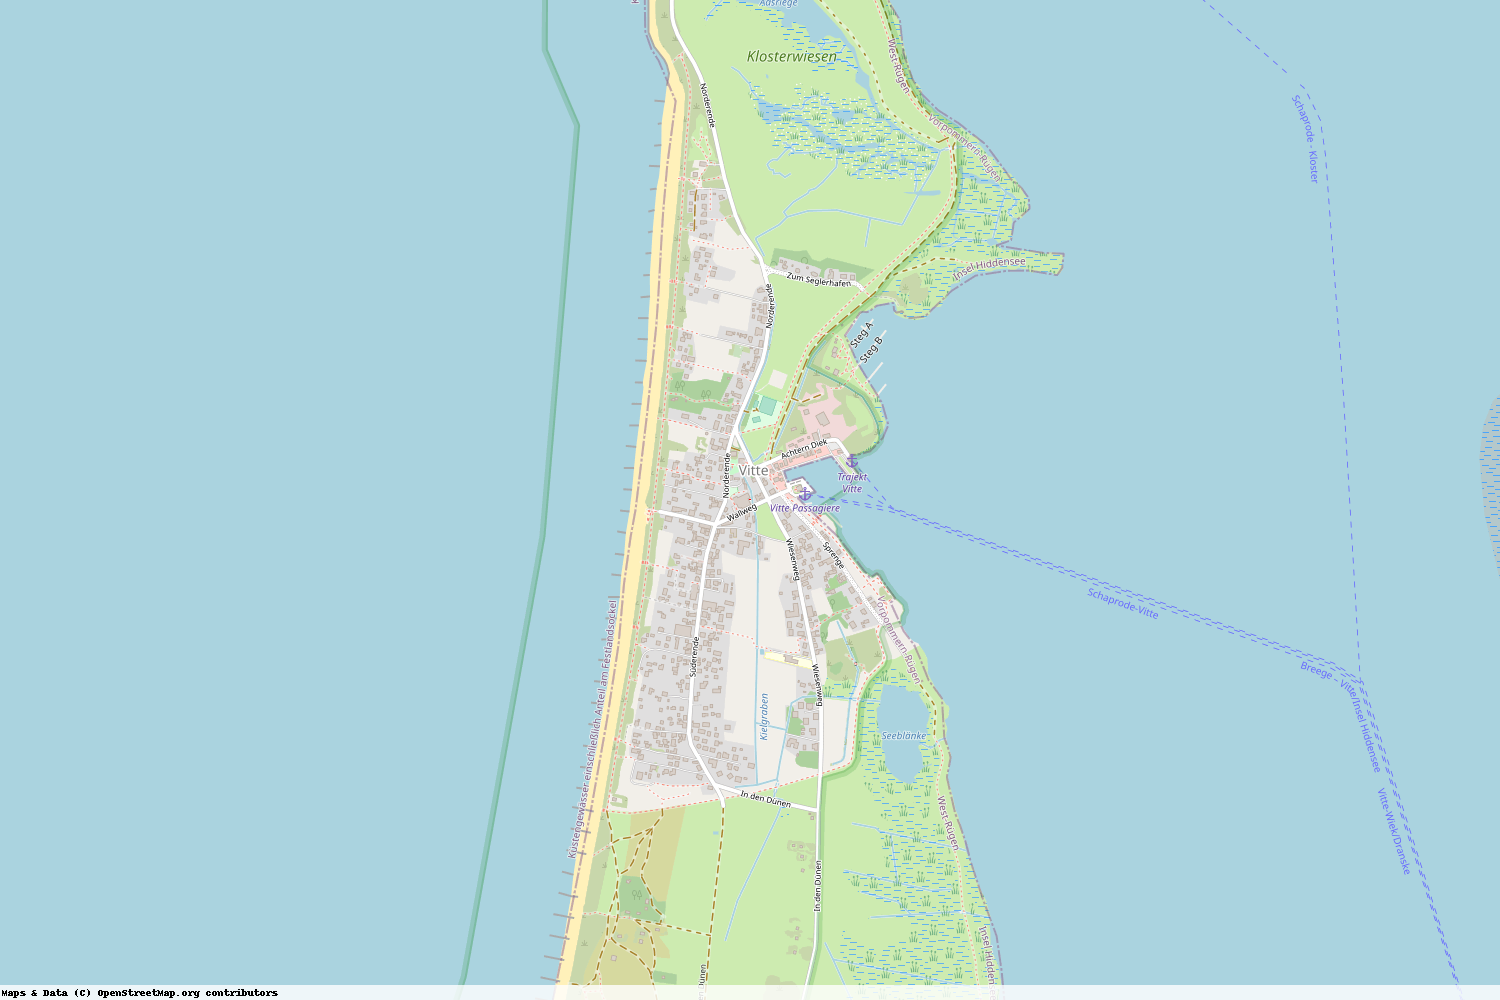 Ist gerade Stromausfall in Mecklenburg-Vorpommern - Vorpommern-Rügen - Insel Hiddensee?